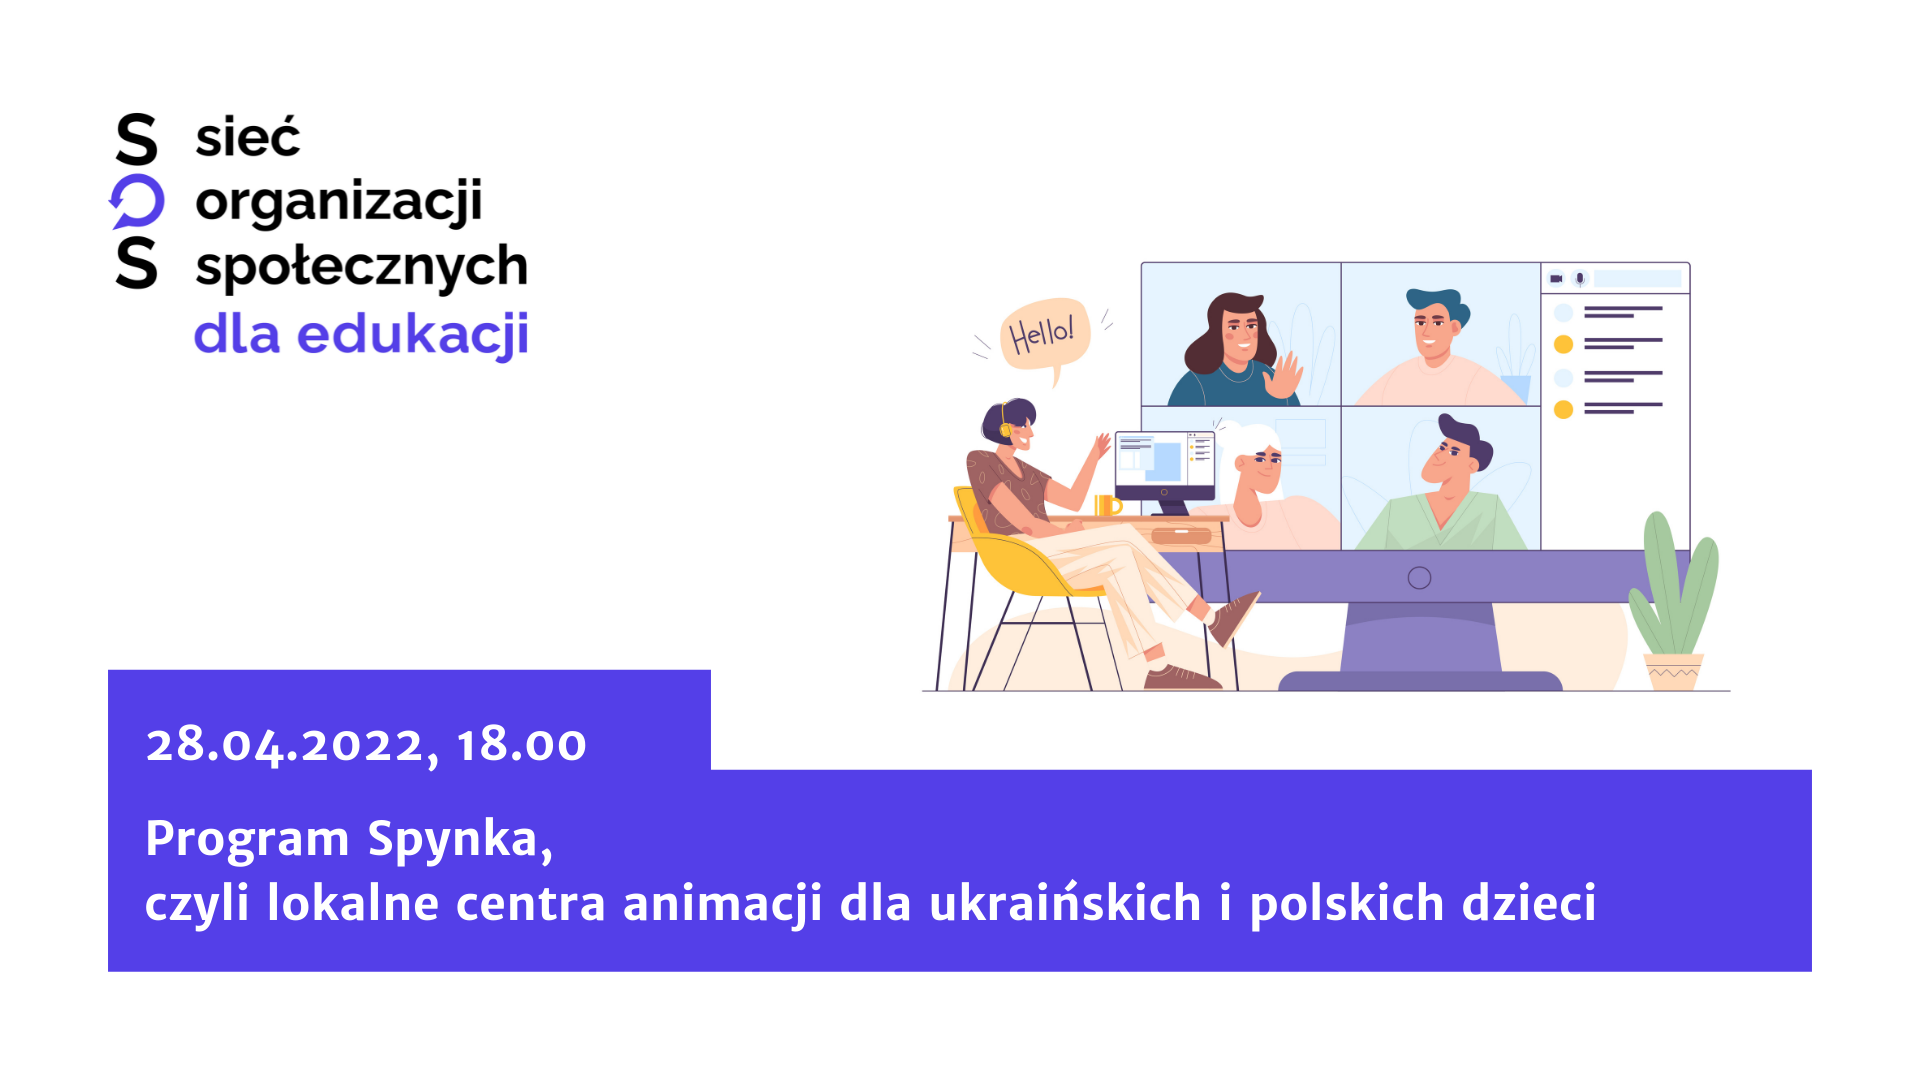 Program Spynka, czyli lokalne centra animacji dla ukraińskich i polskich dzieci